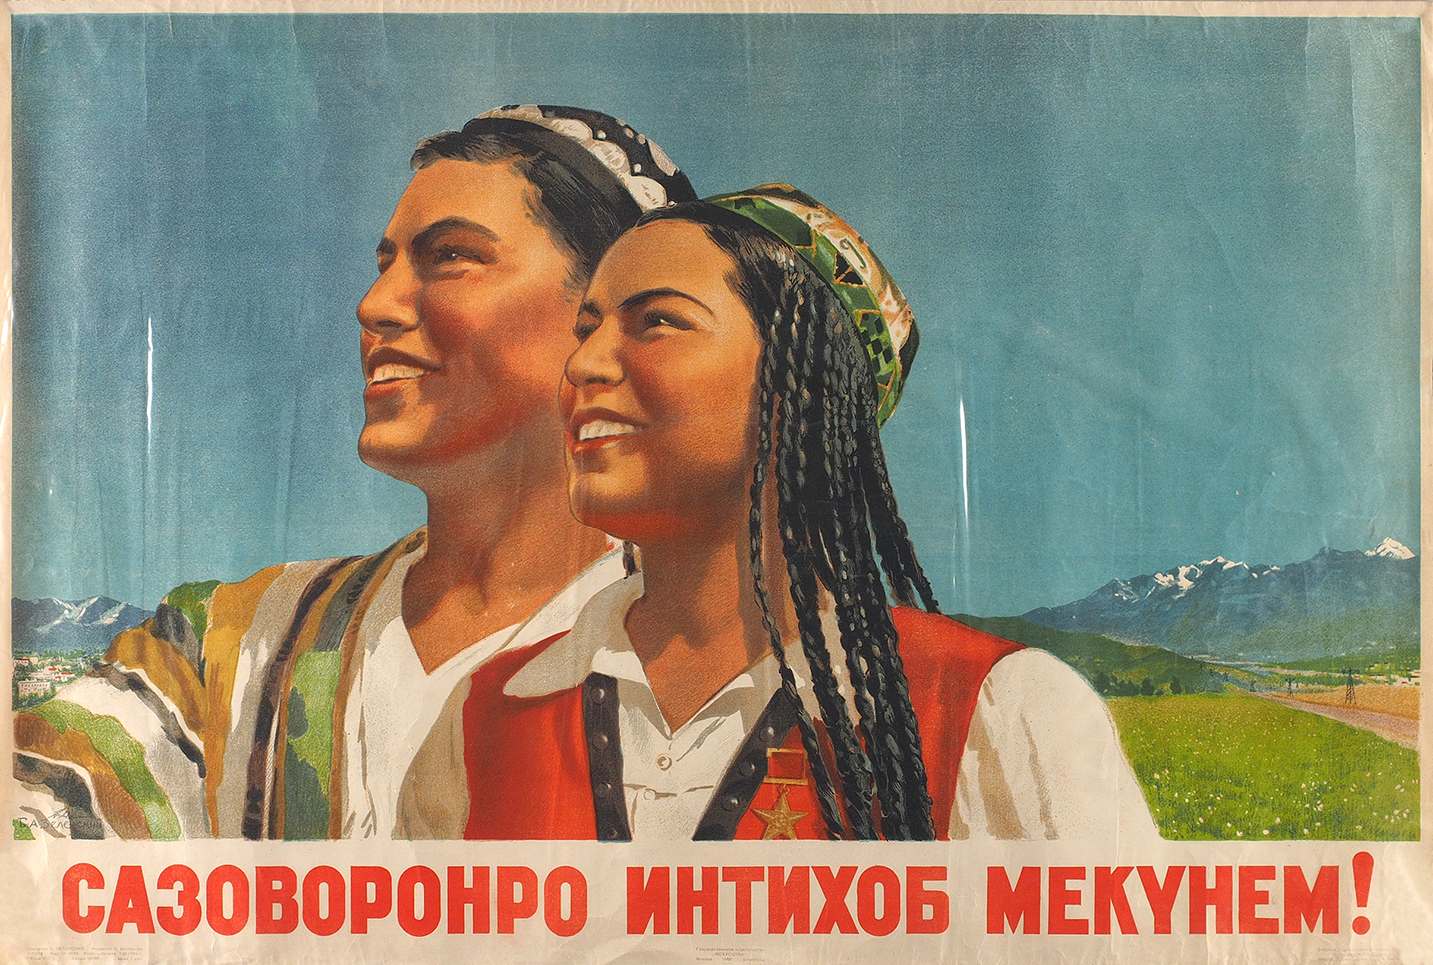 Поздравление с днем рождения на таджикском языке. Таджикистан ССР плакаты. Таджикская ССР на советских плакатах. Советские плакаты Узбекистан. Советские плакаты Таджикистана.